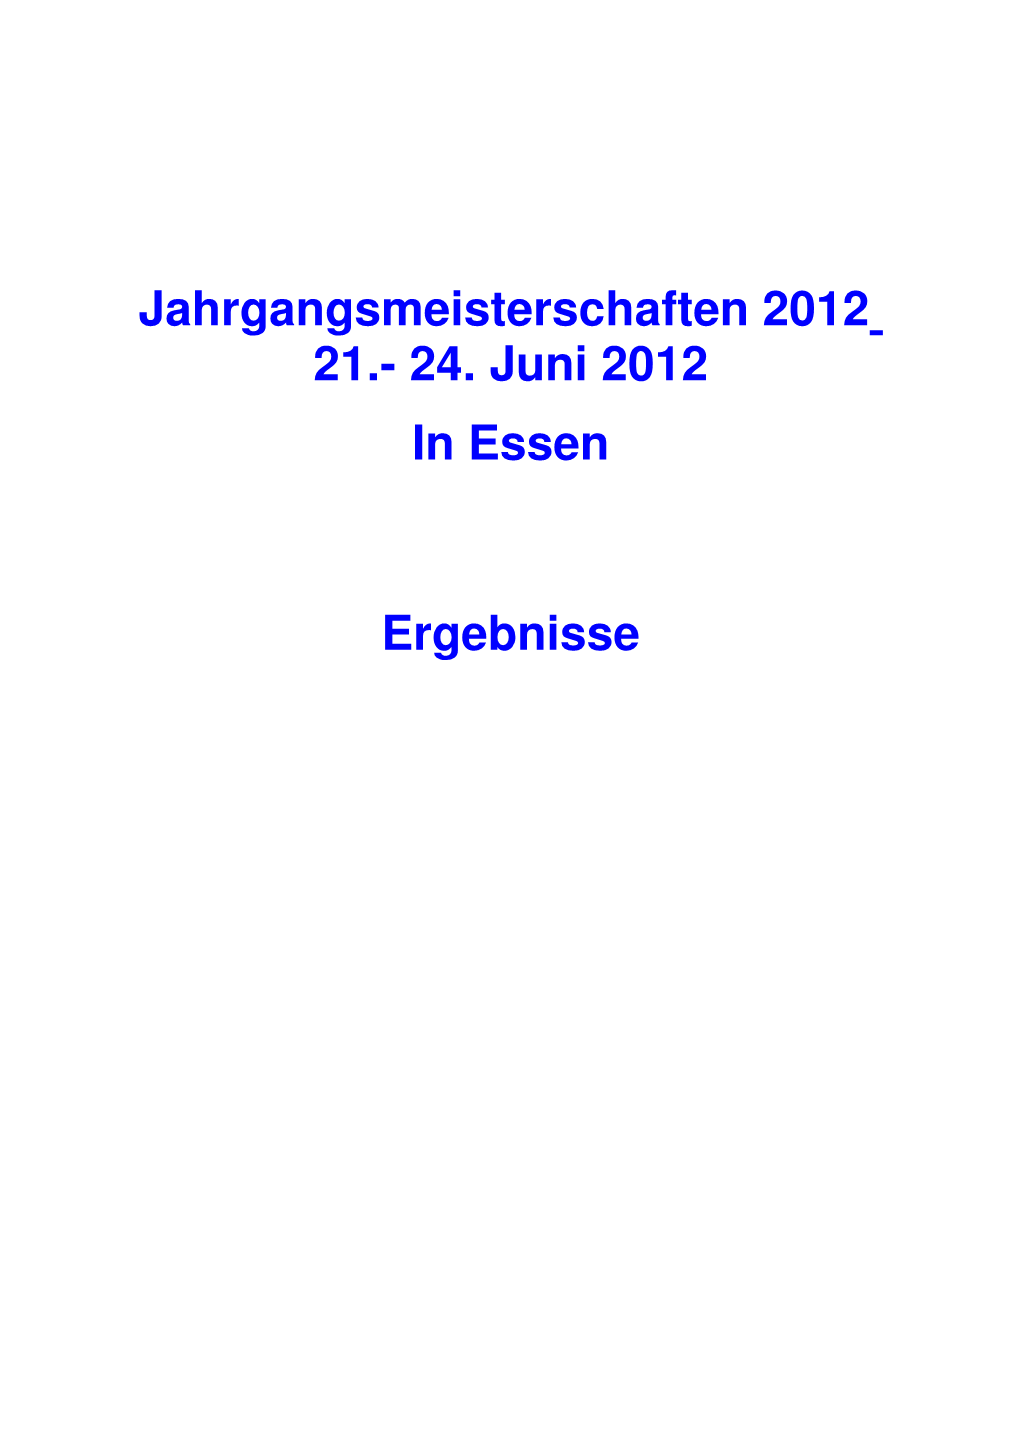 Jahrgangsmeisterschaften 2012 21.- 24